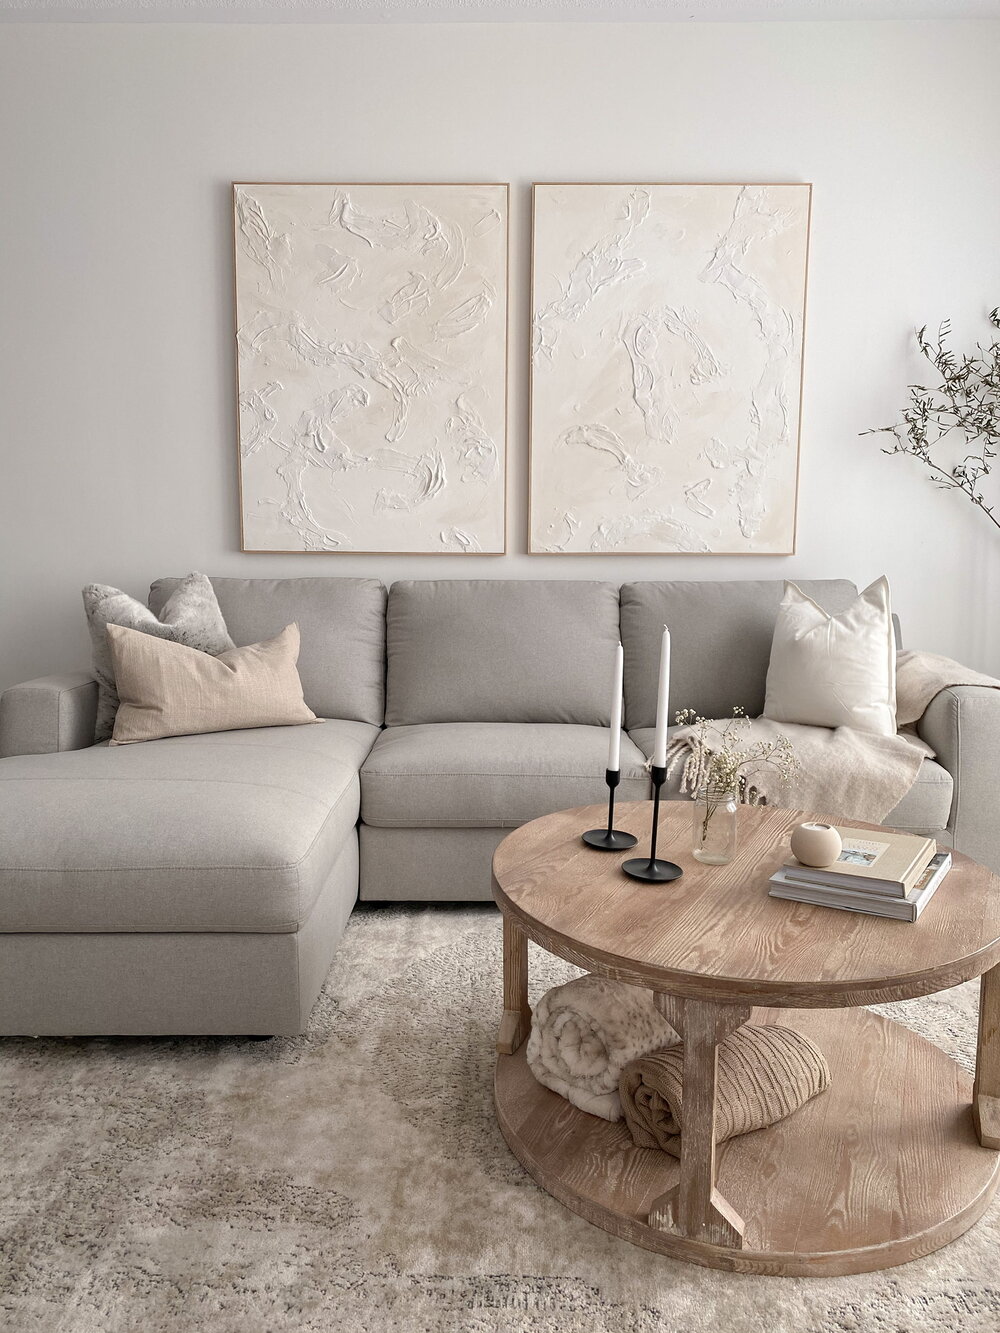 Living Room Reveal - New furniture — H A N A N